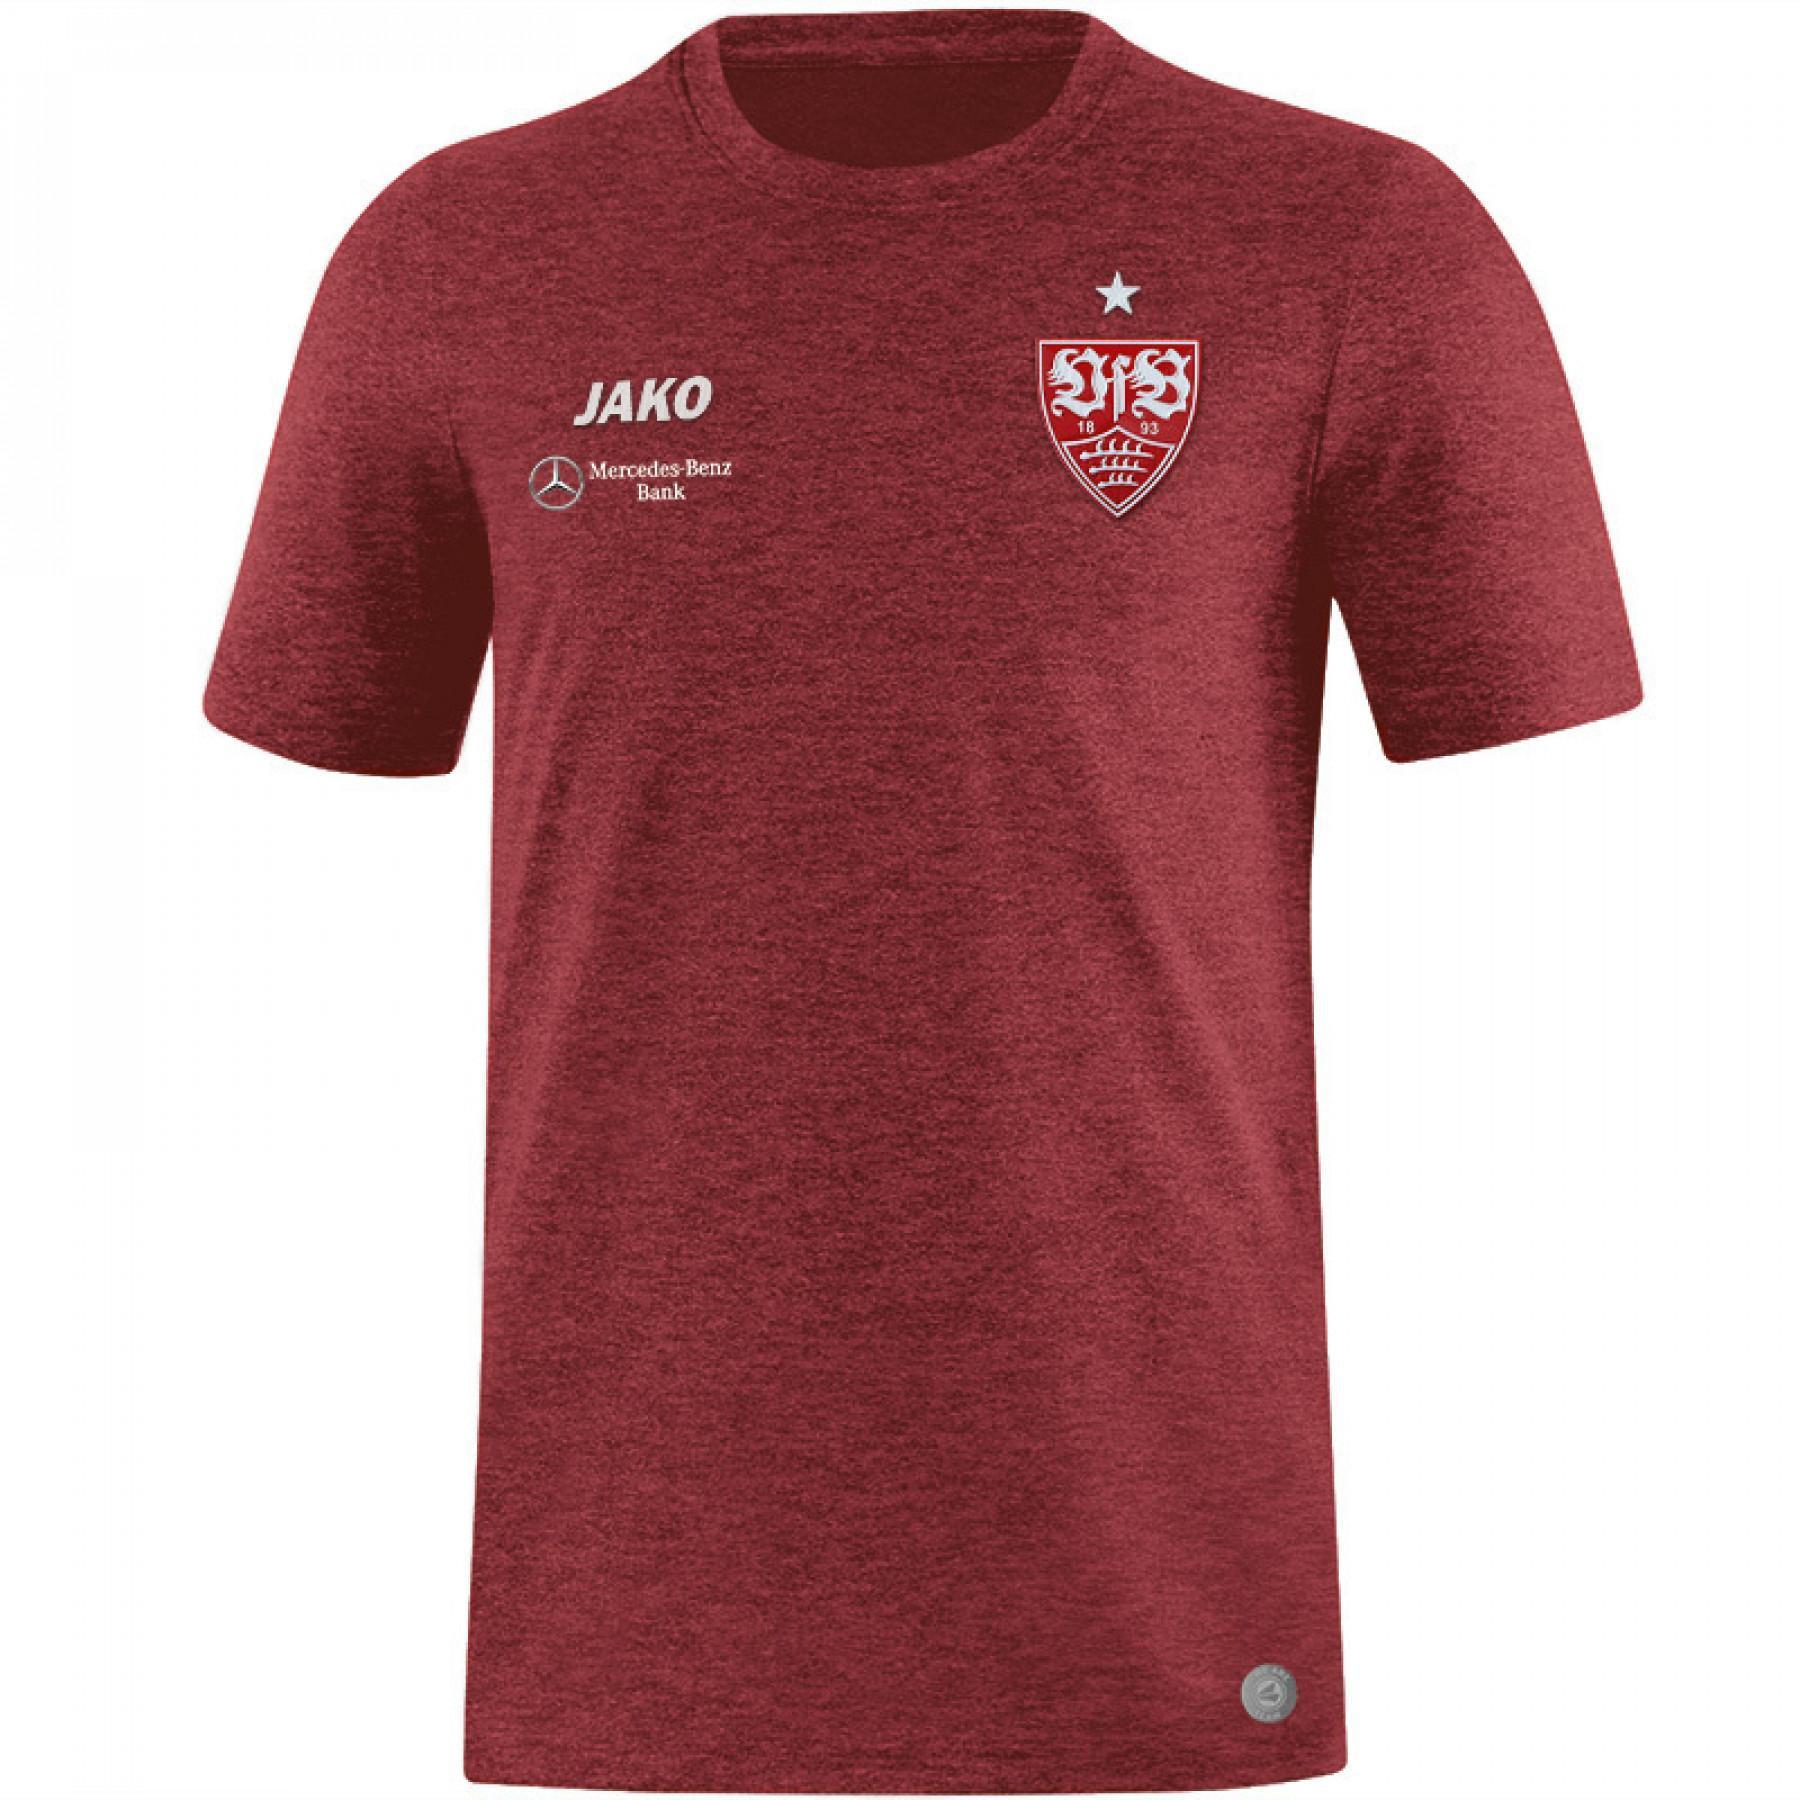 Child's T-shirt VfB Stuttgart Premium 2019/20